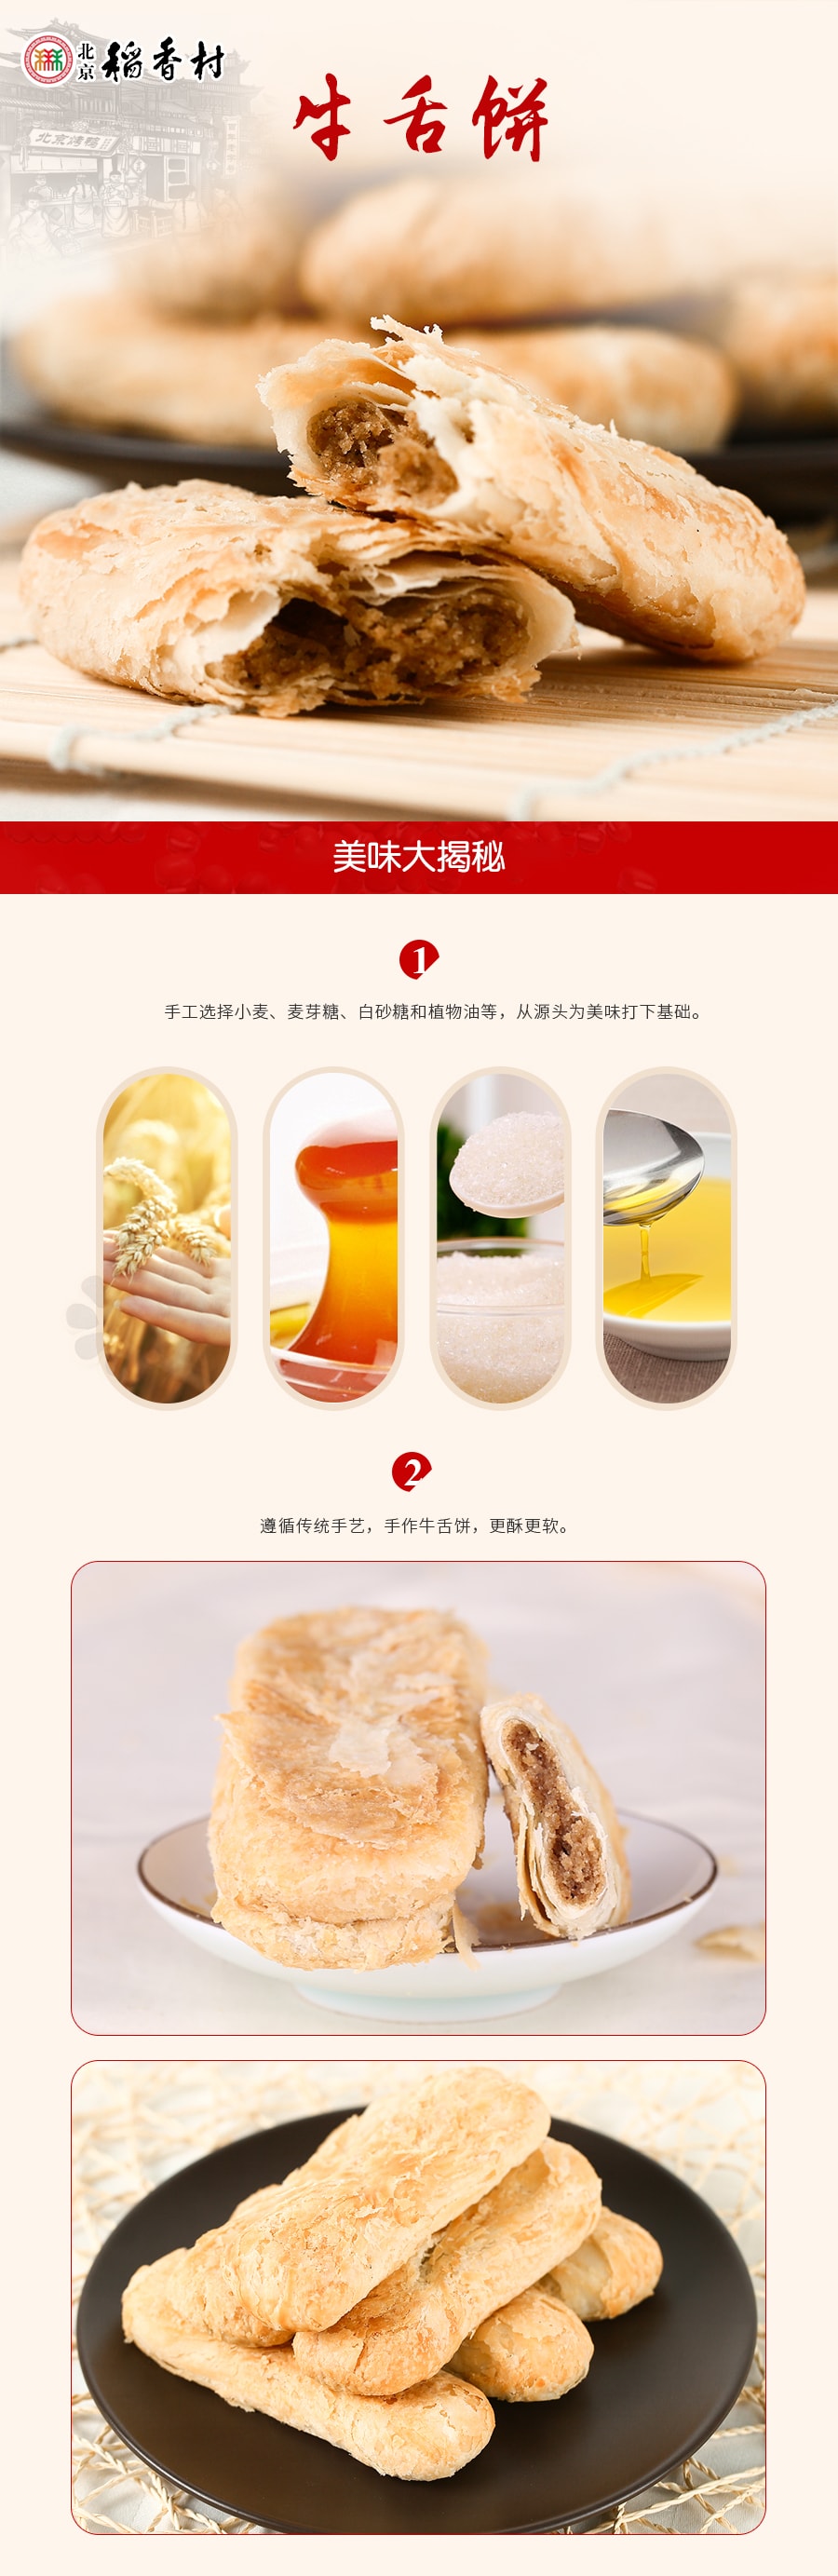 【中国直邮】北京稻香村 牛舌饼 220g(下单7-10个工作日后发货)